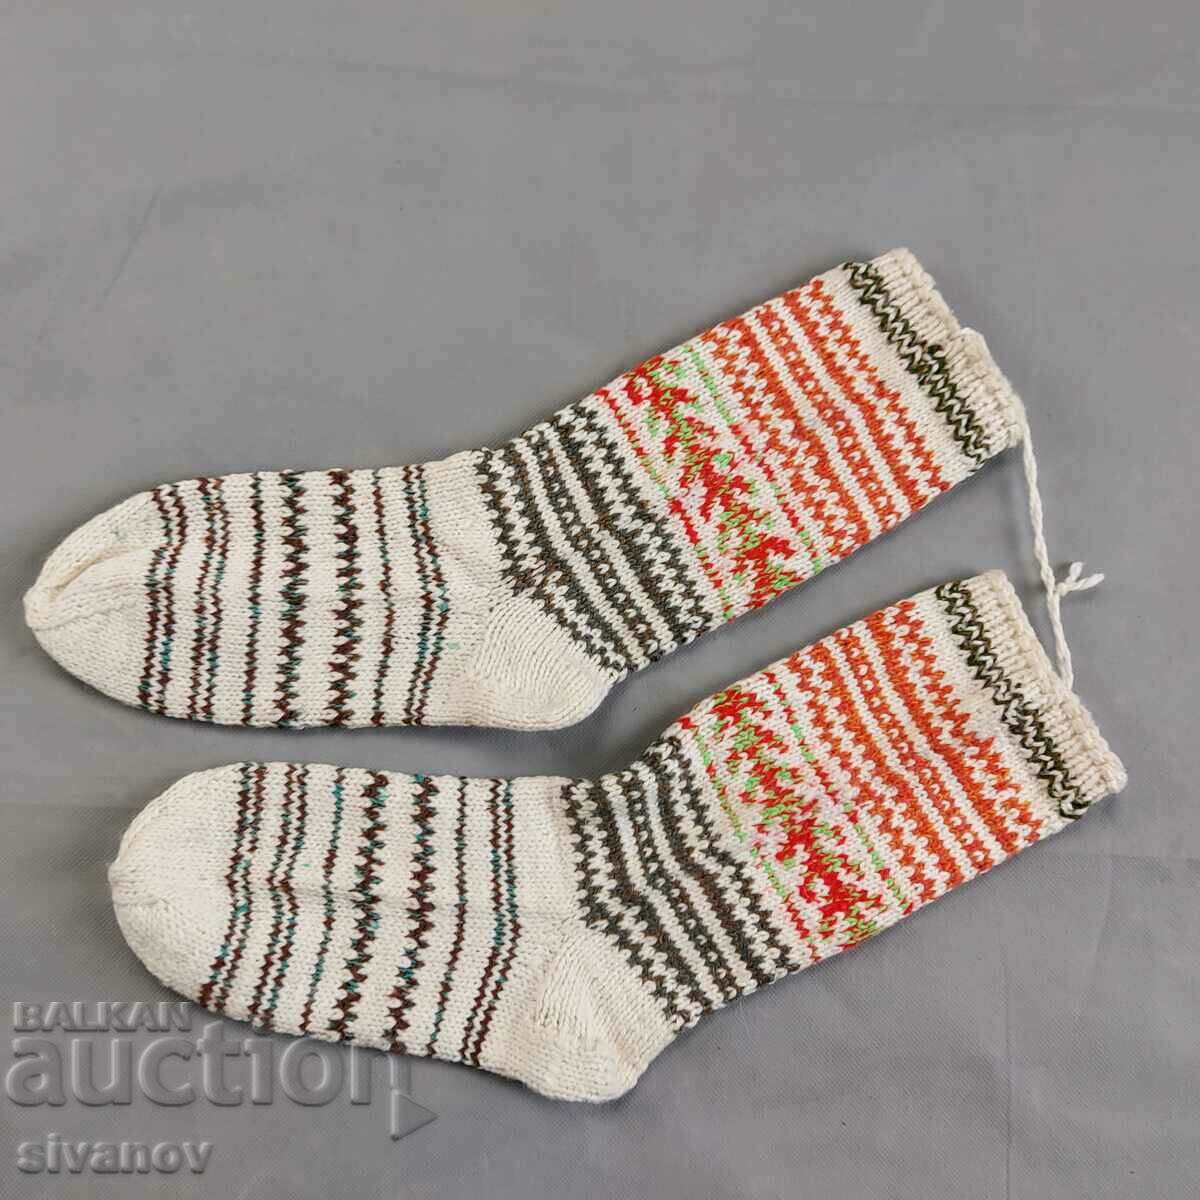 Μάλλινες κάλτσες για έθνικ φολκλόρ φορεσιά #2358